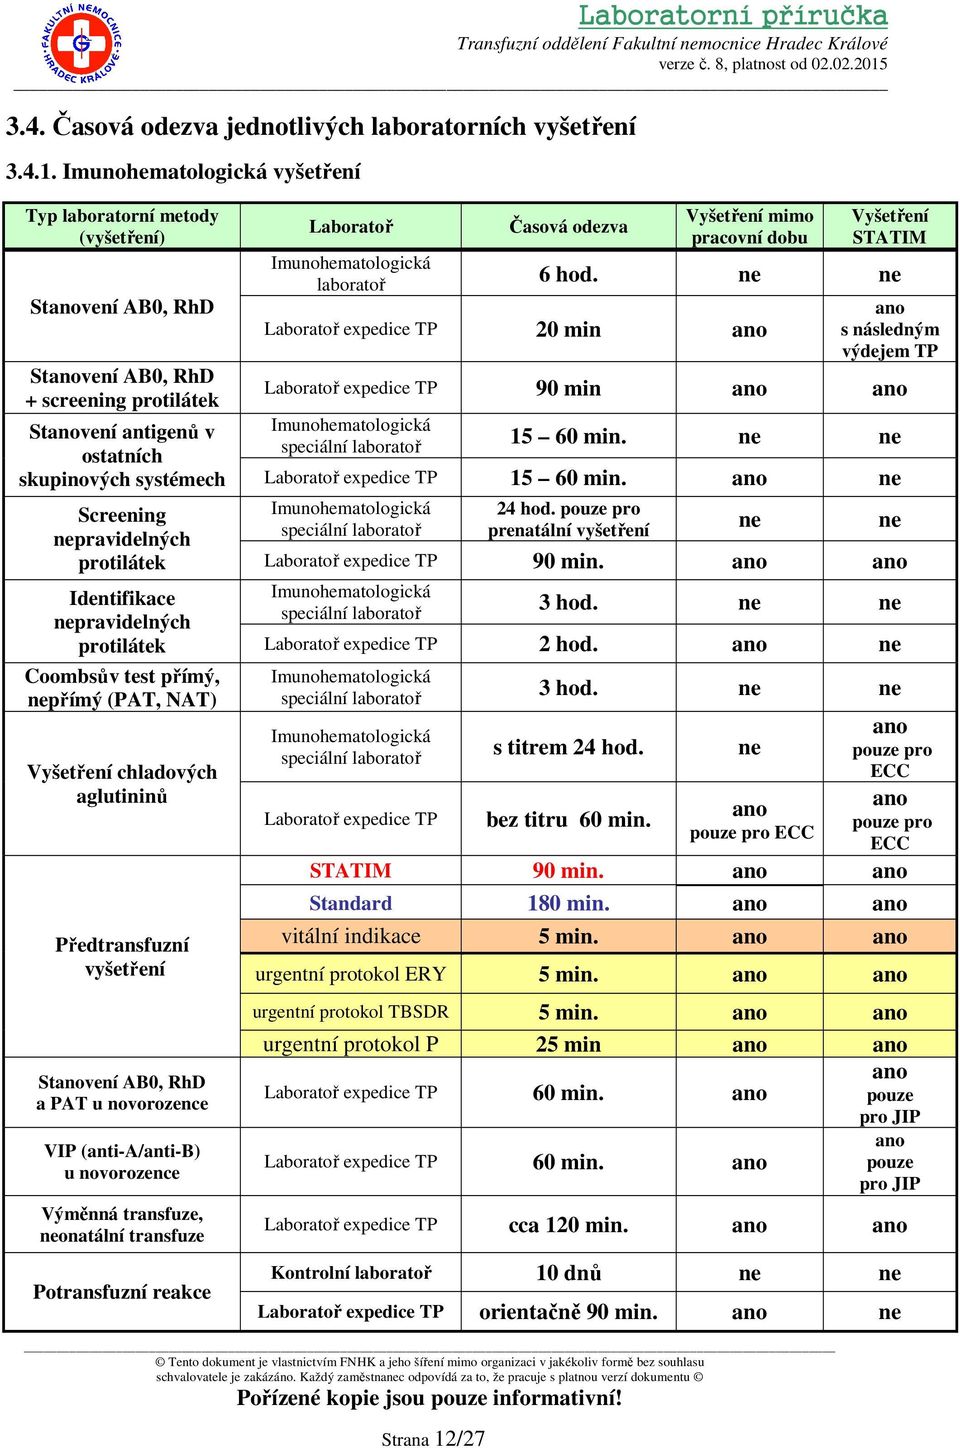 Identifikace nepravidelných protilátek Coombsův test přímý, nepřímý (PAT, NAT) Vyšetření chladových aglutininů Předtransfuzní vyšetření Stanovení AB0, RhD a PAT u novorozence VIP (anti-a/anti-b) u